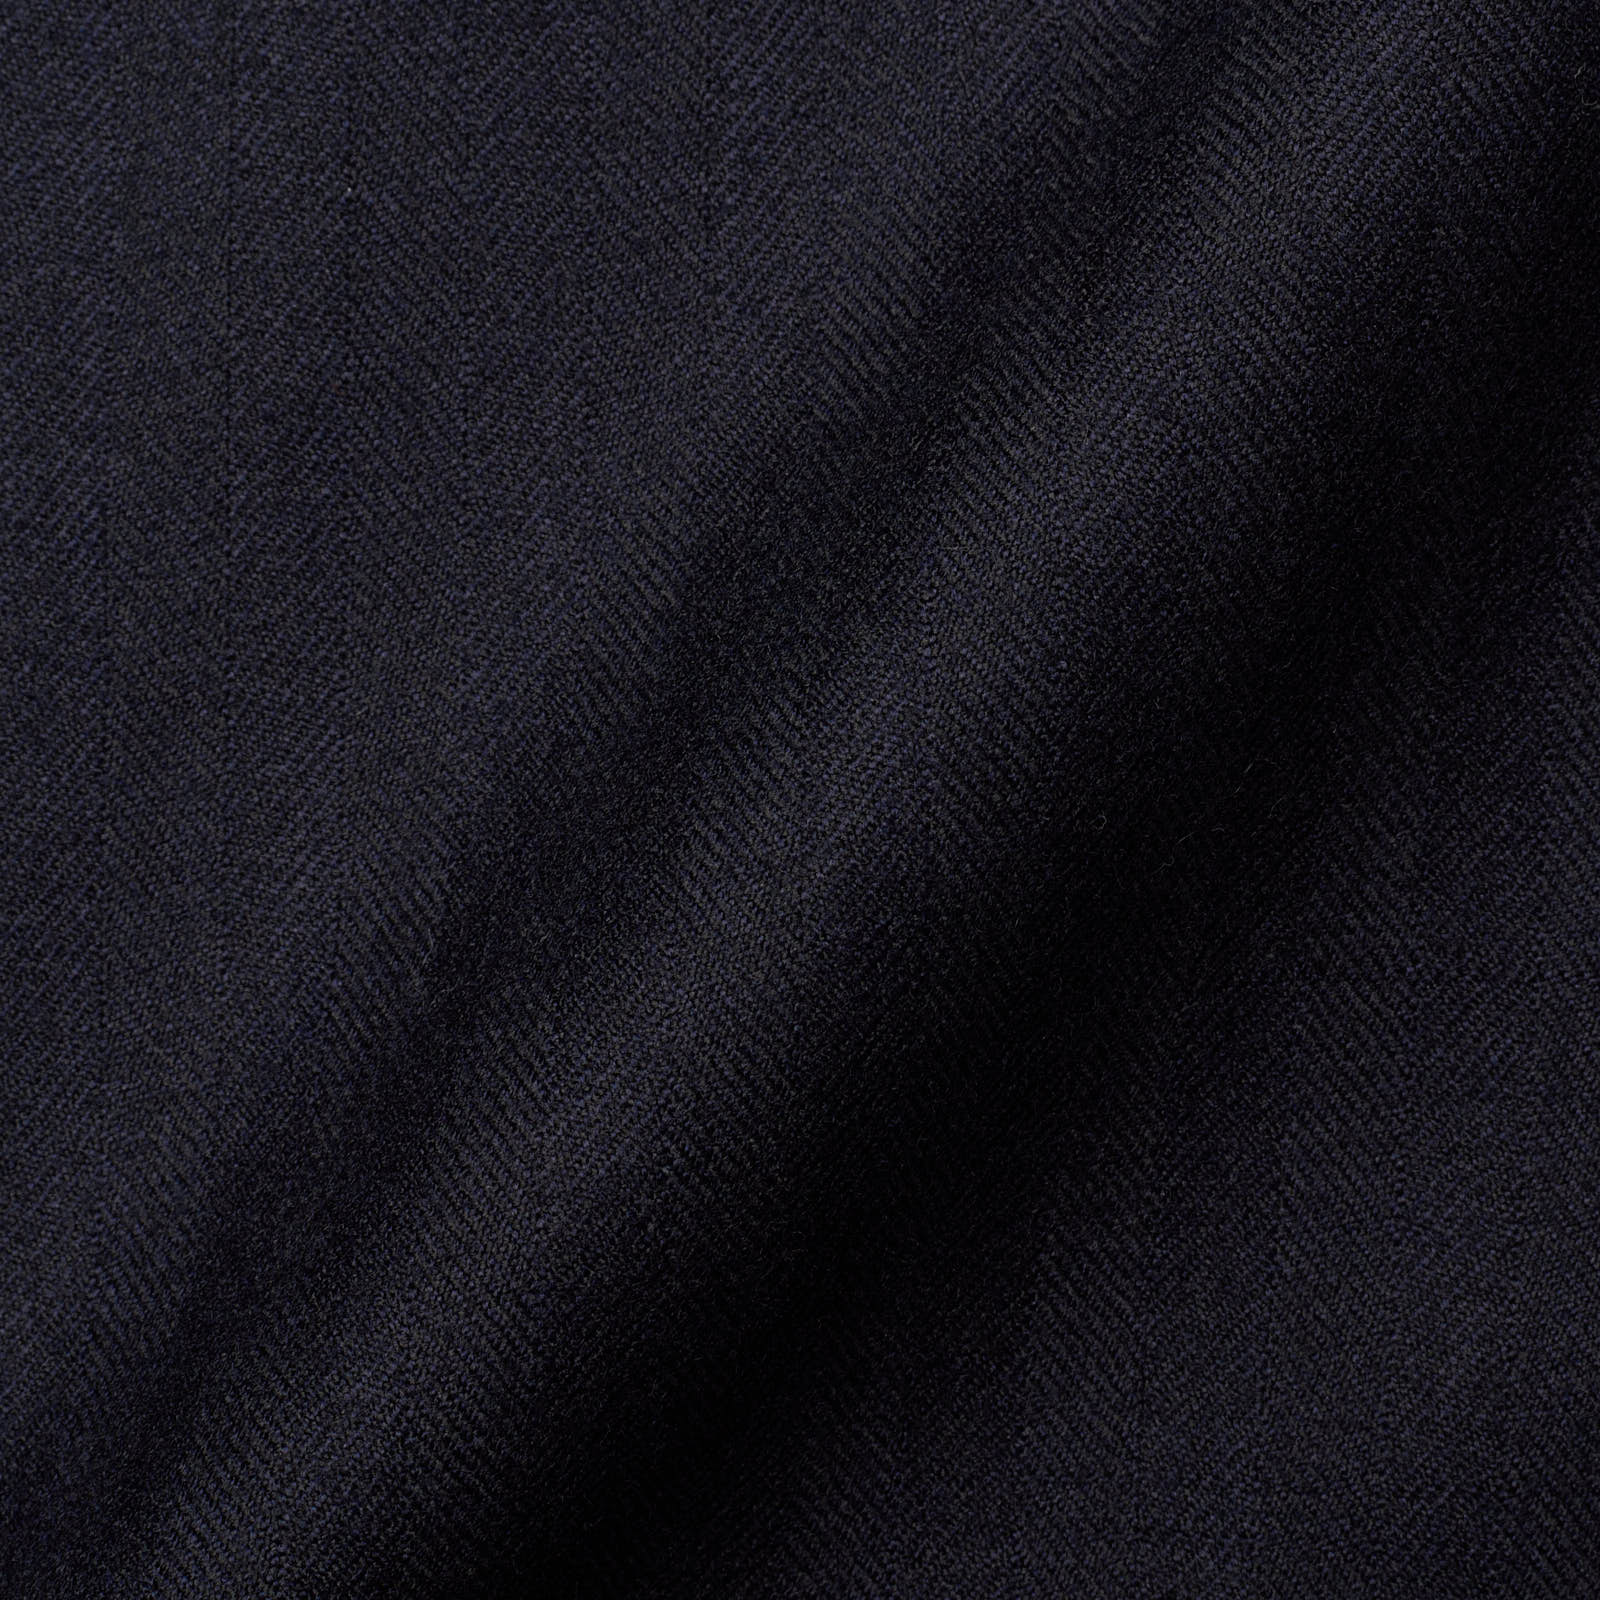 RUBINACCI LH Bespoke Navy Blue Flannel Herringbone Wool Jacket EU 52 US 42